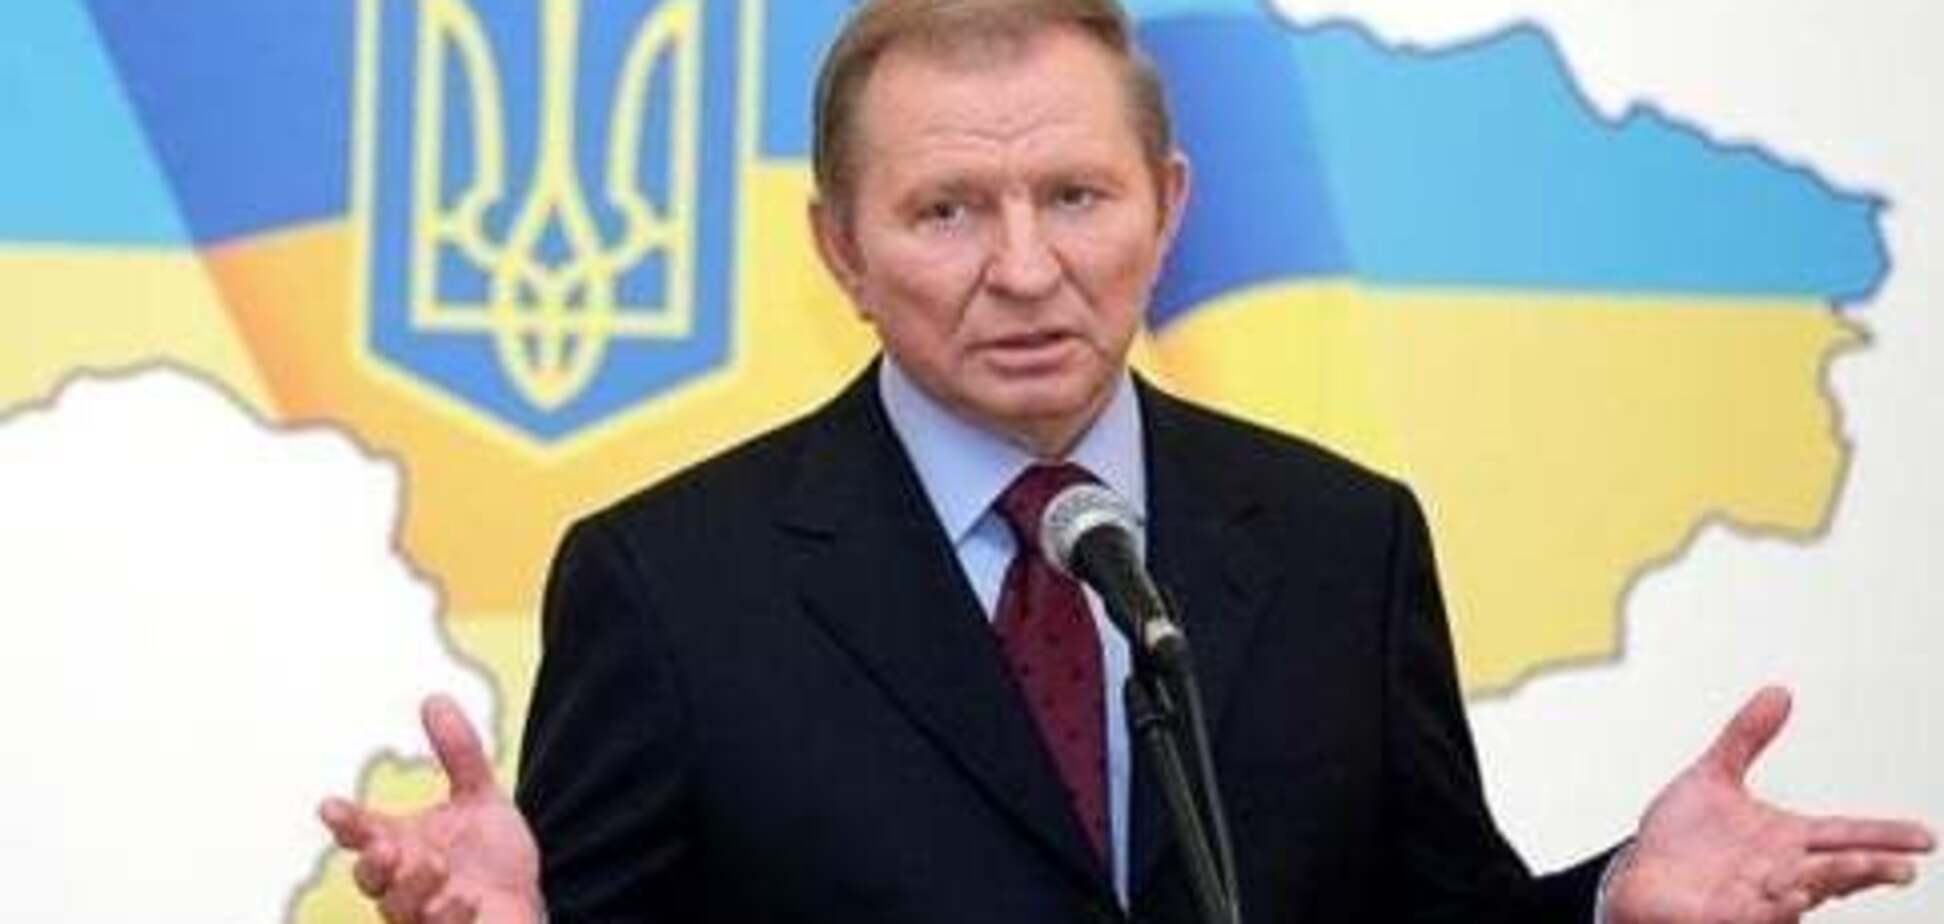 Кучма заявил о намерении выйти из переговоров в Минске по Донбассу: что известно